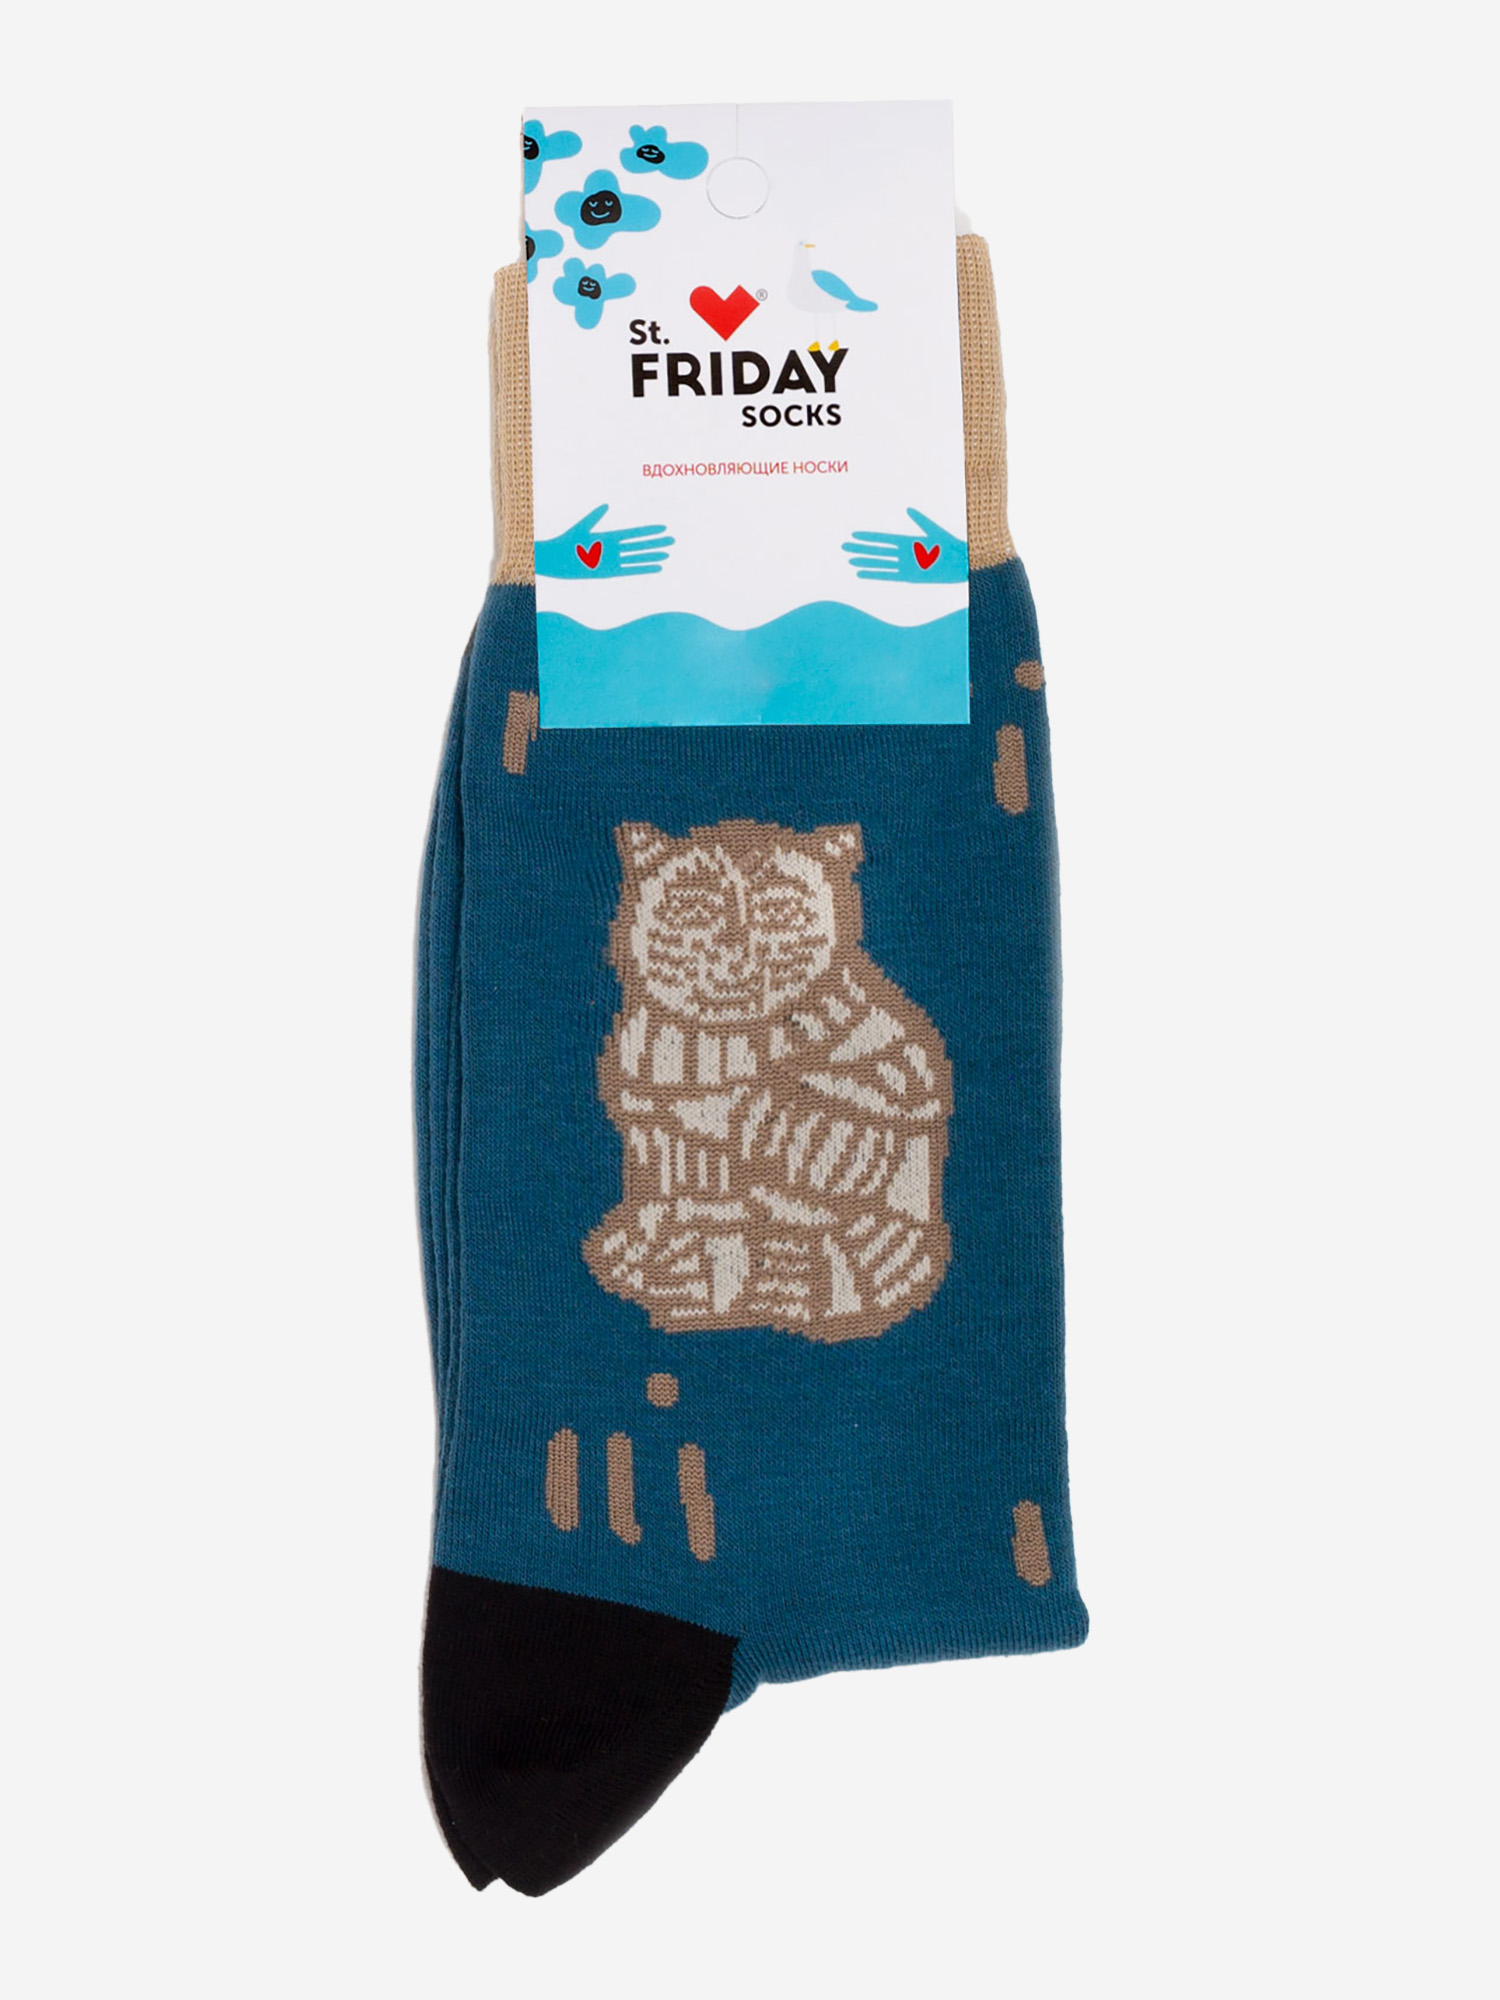 Носки с рисунками St.Friday Socks - Пряник кот, Синий носки с рисунками st friday socks пряник кот синий